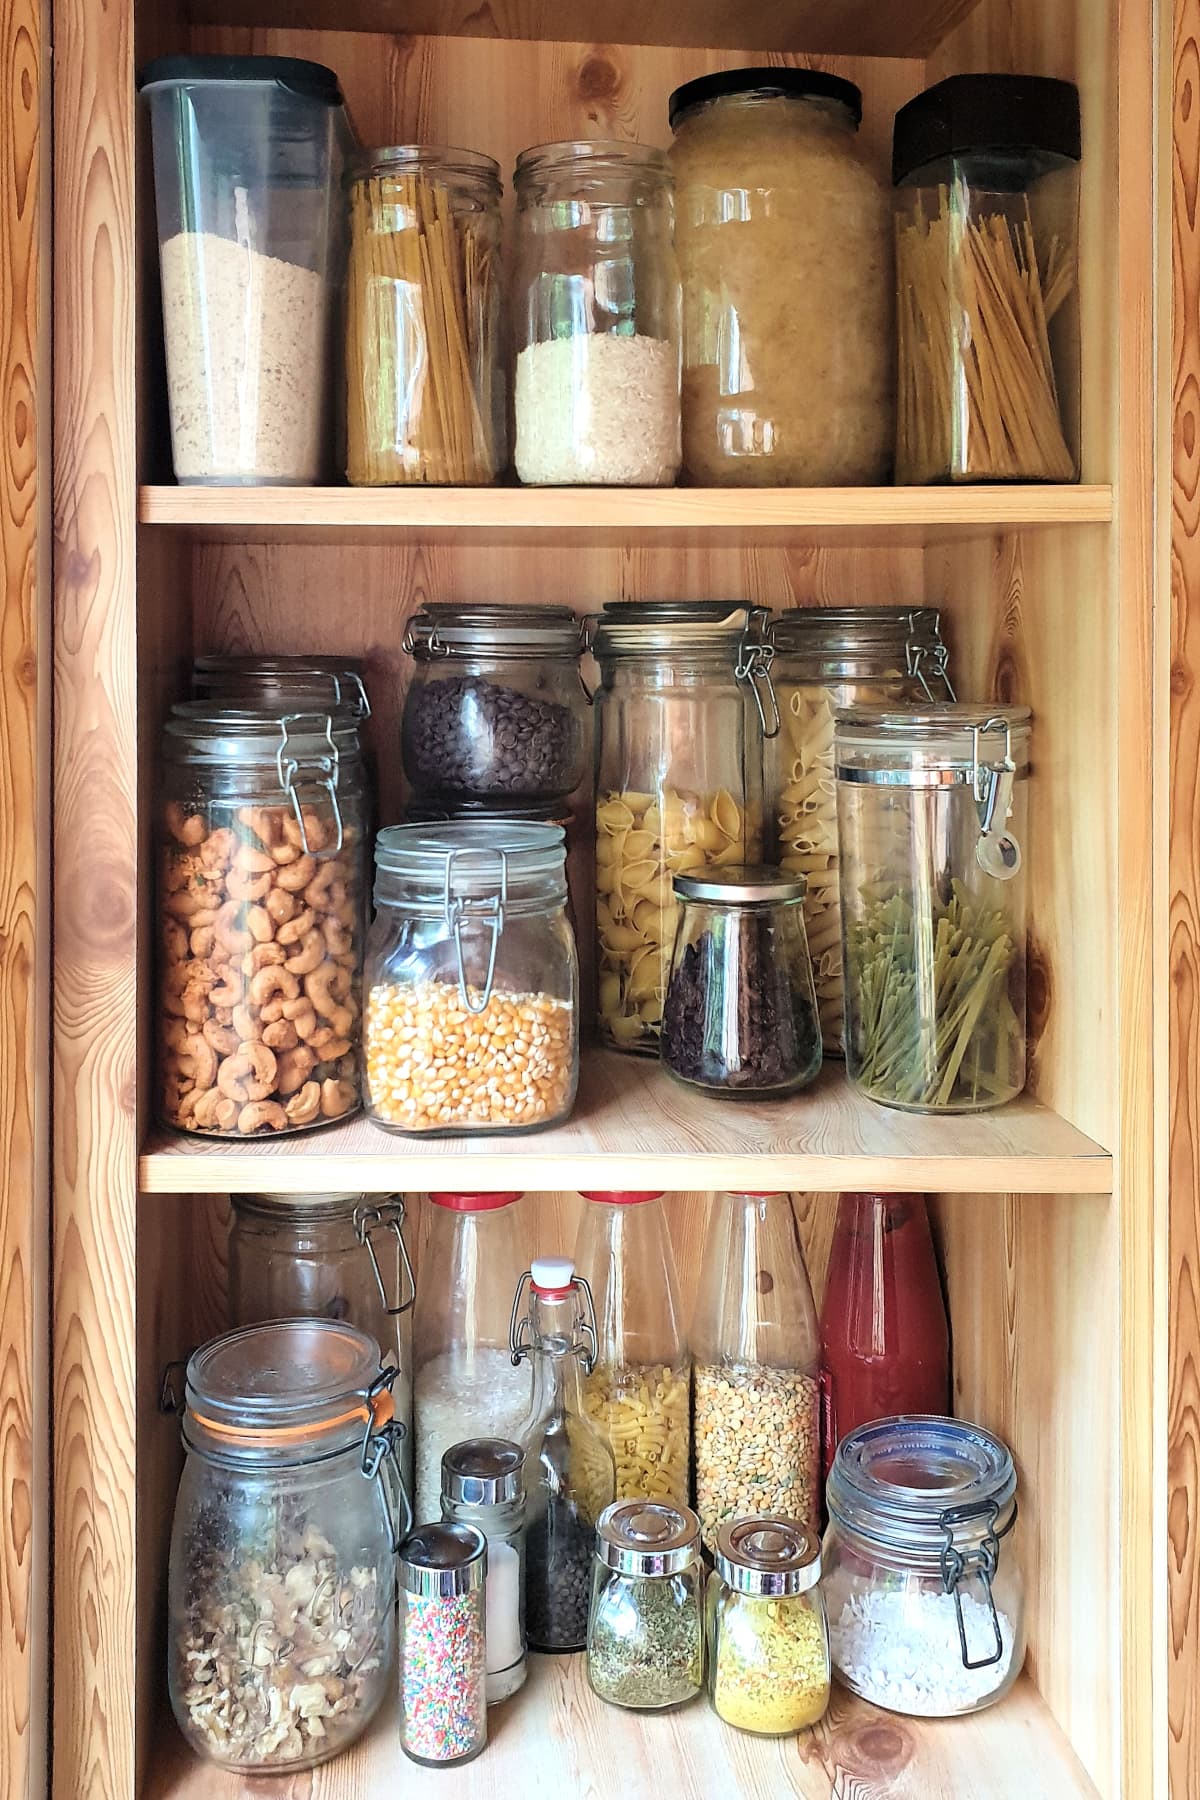 Glass jars of pantry staples on shelves